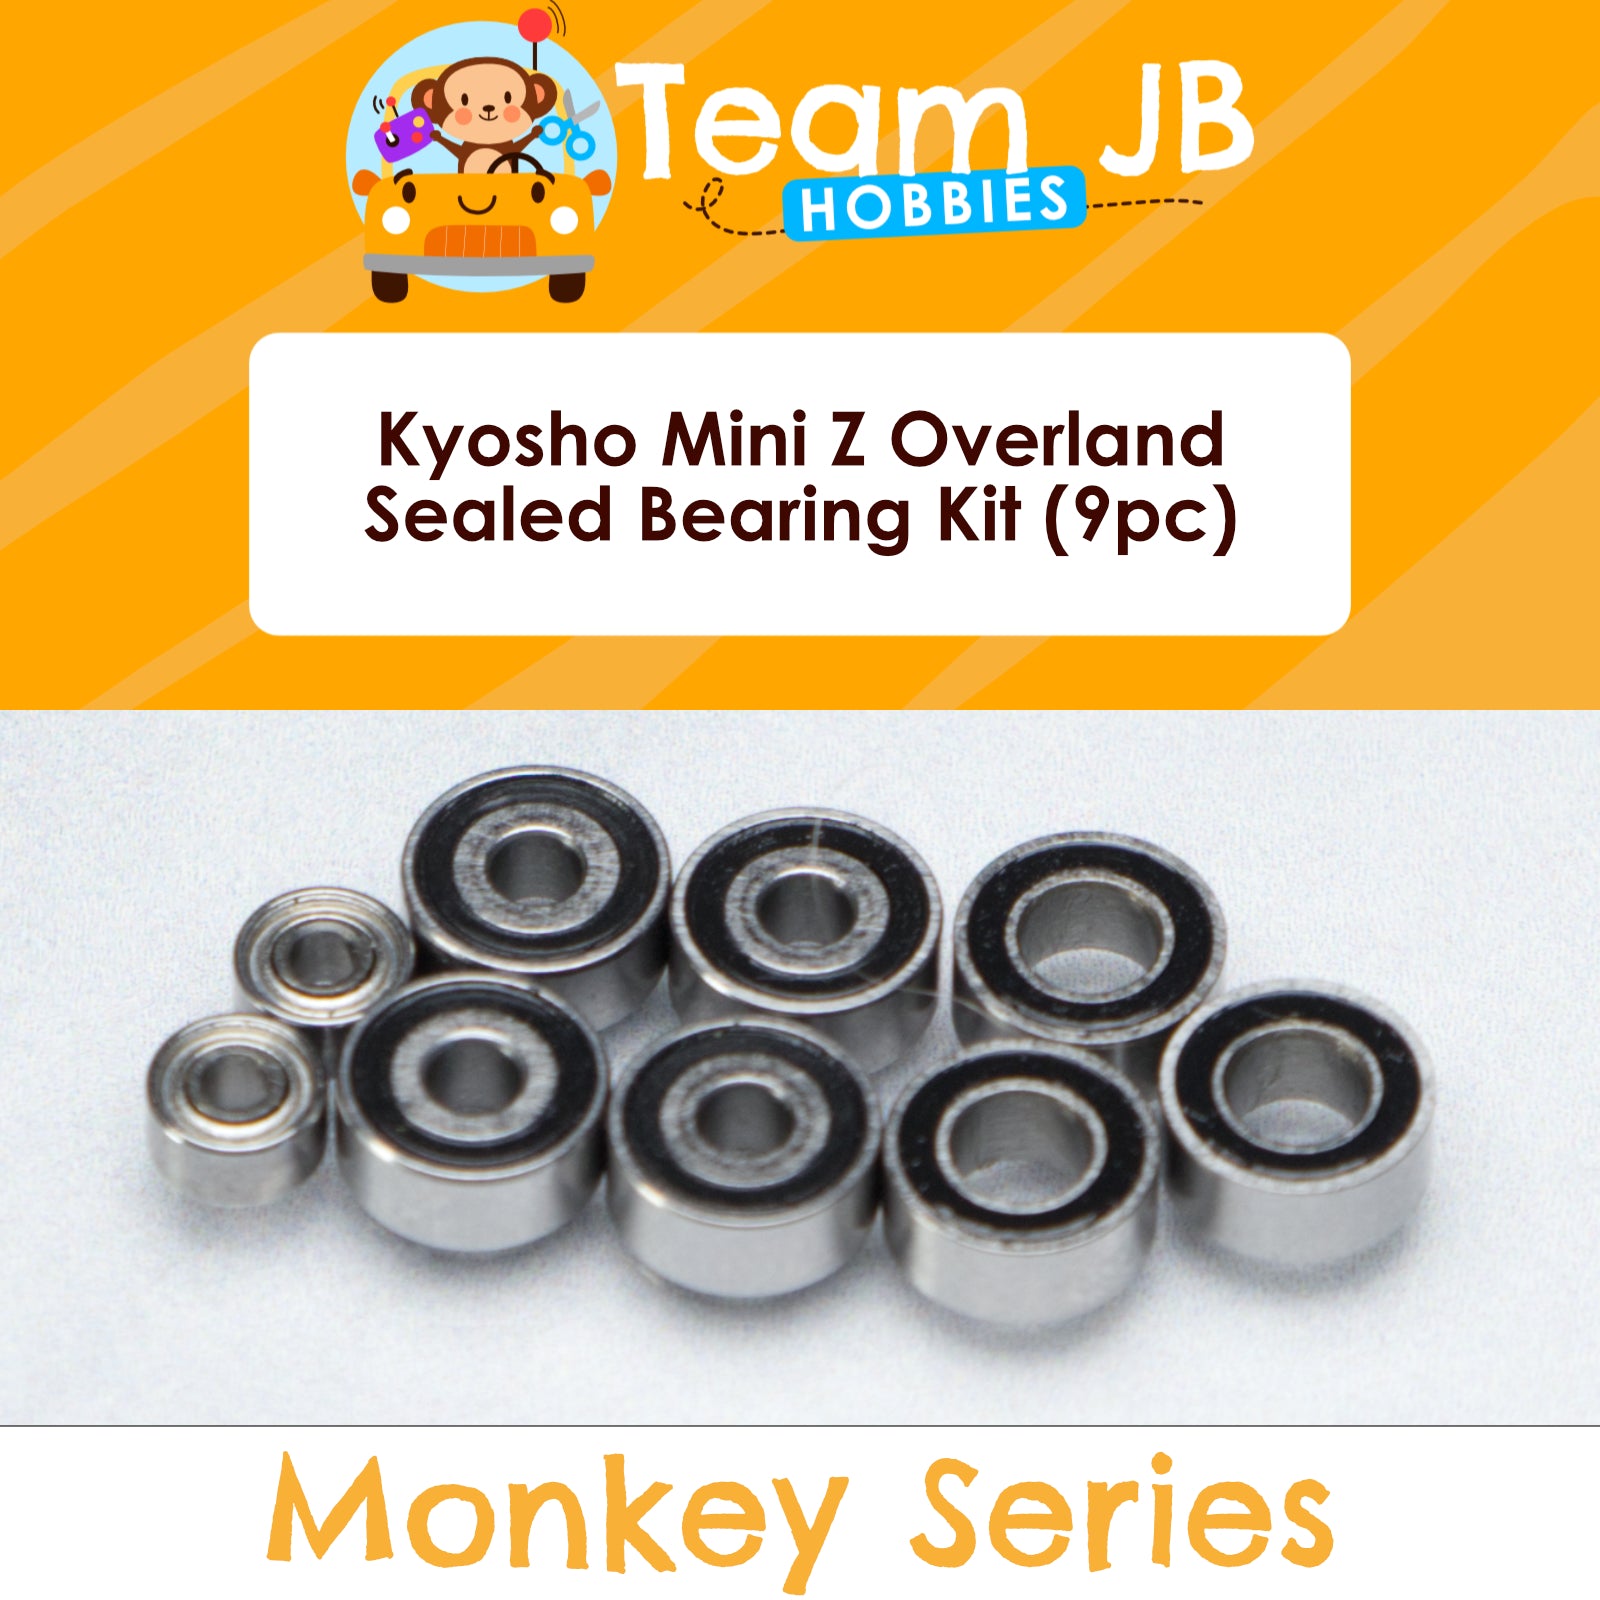 Kyosho Mini Z Overland - Sealed Bearing Kit